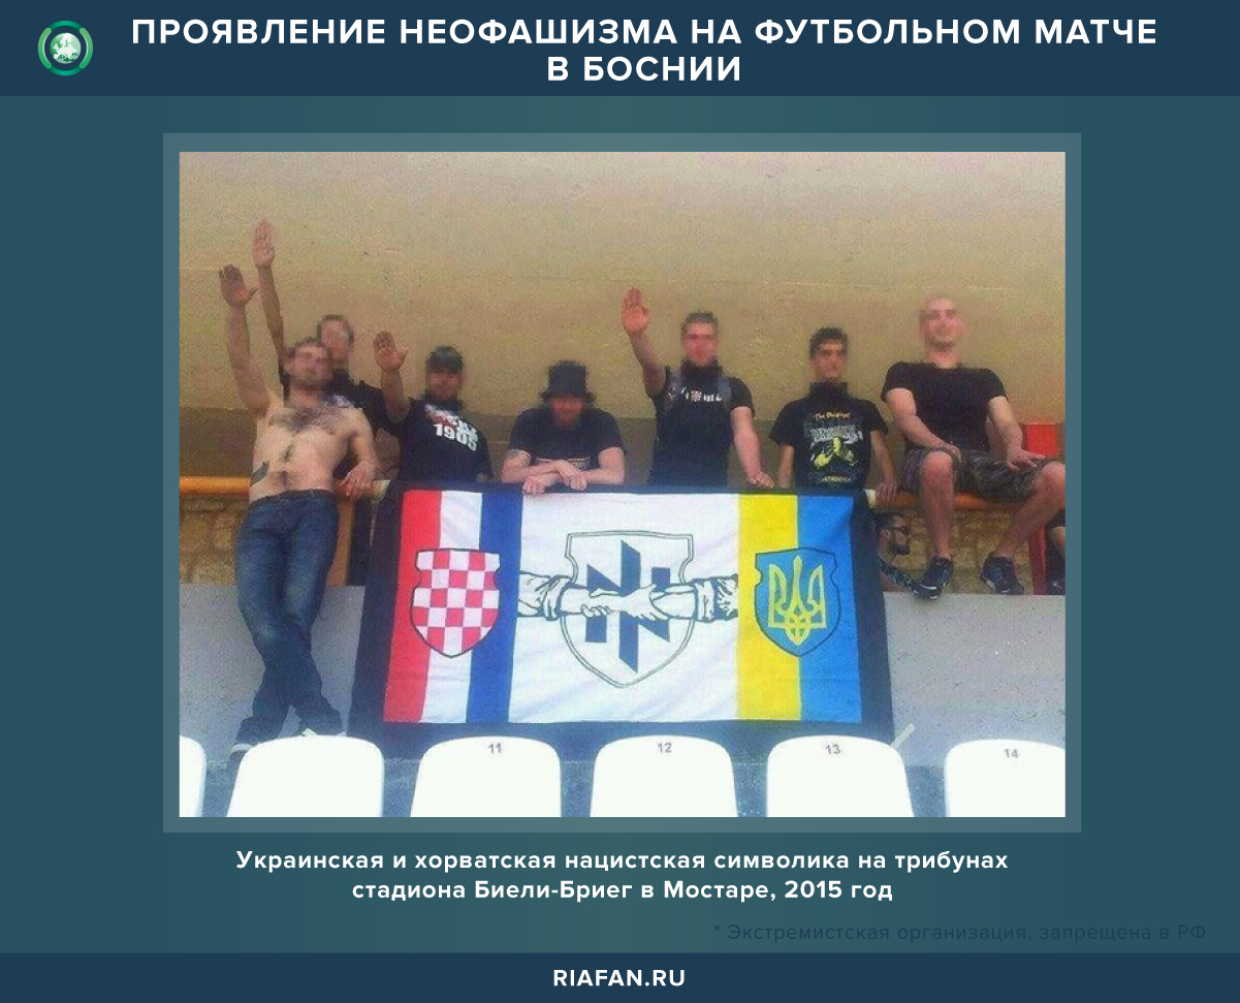 Проявление неофашизма на футбольном матче в Боснии